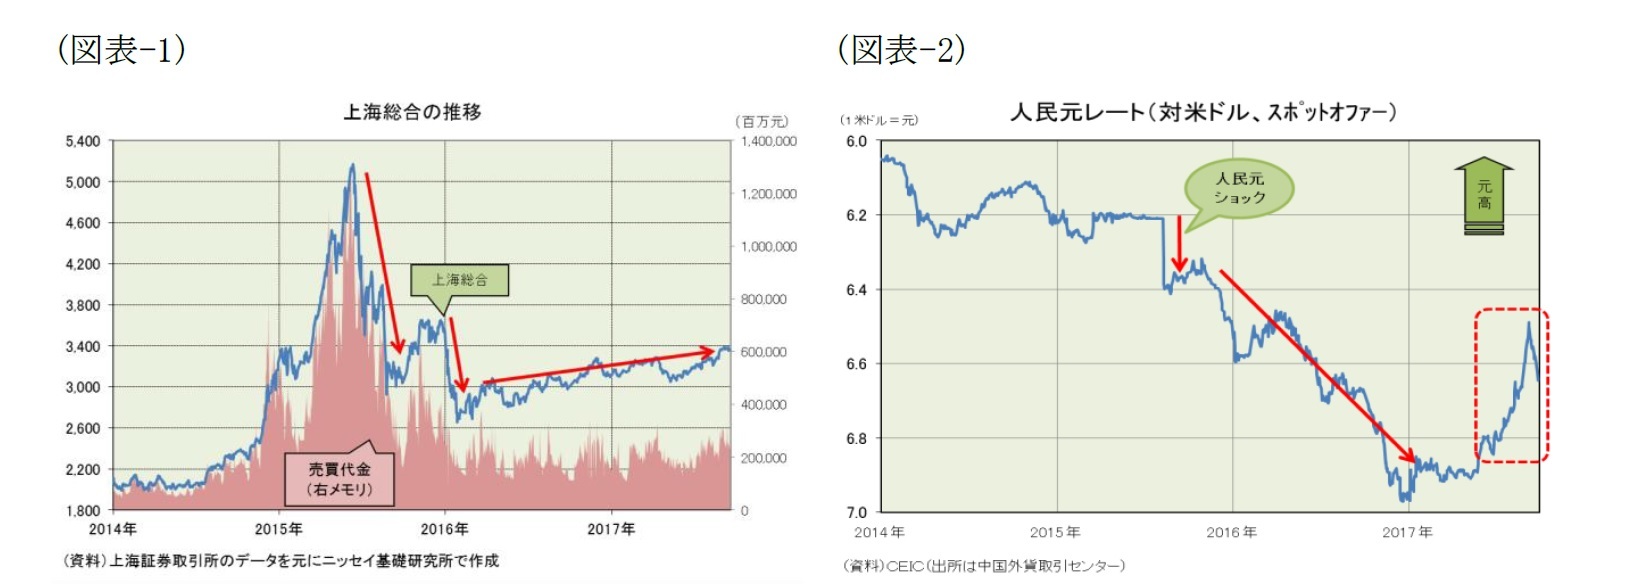 （図表-1）上海総合の推移/（図表-2）人民元レート(対米ドル、スポットオファー)